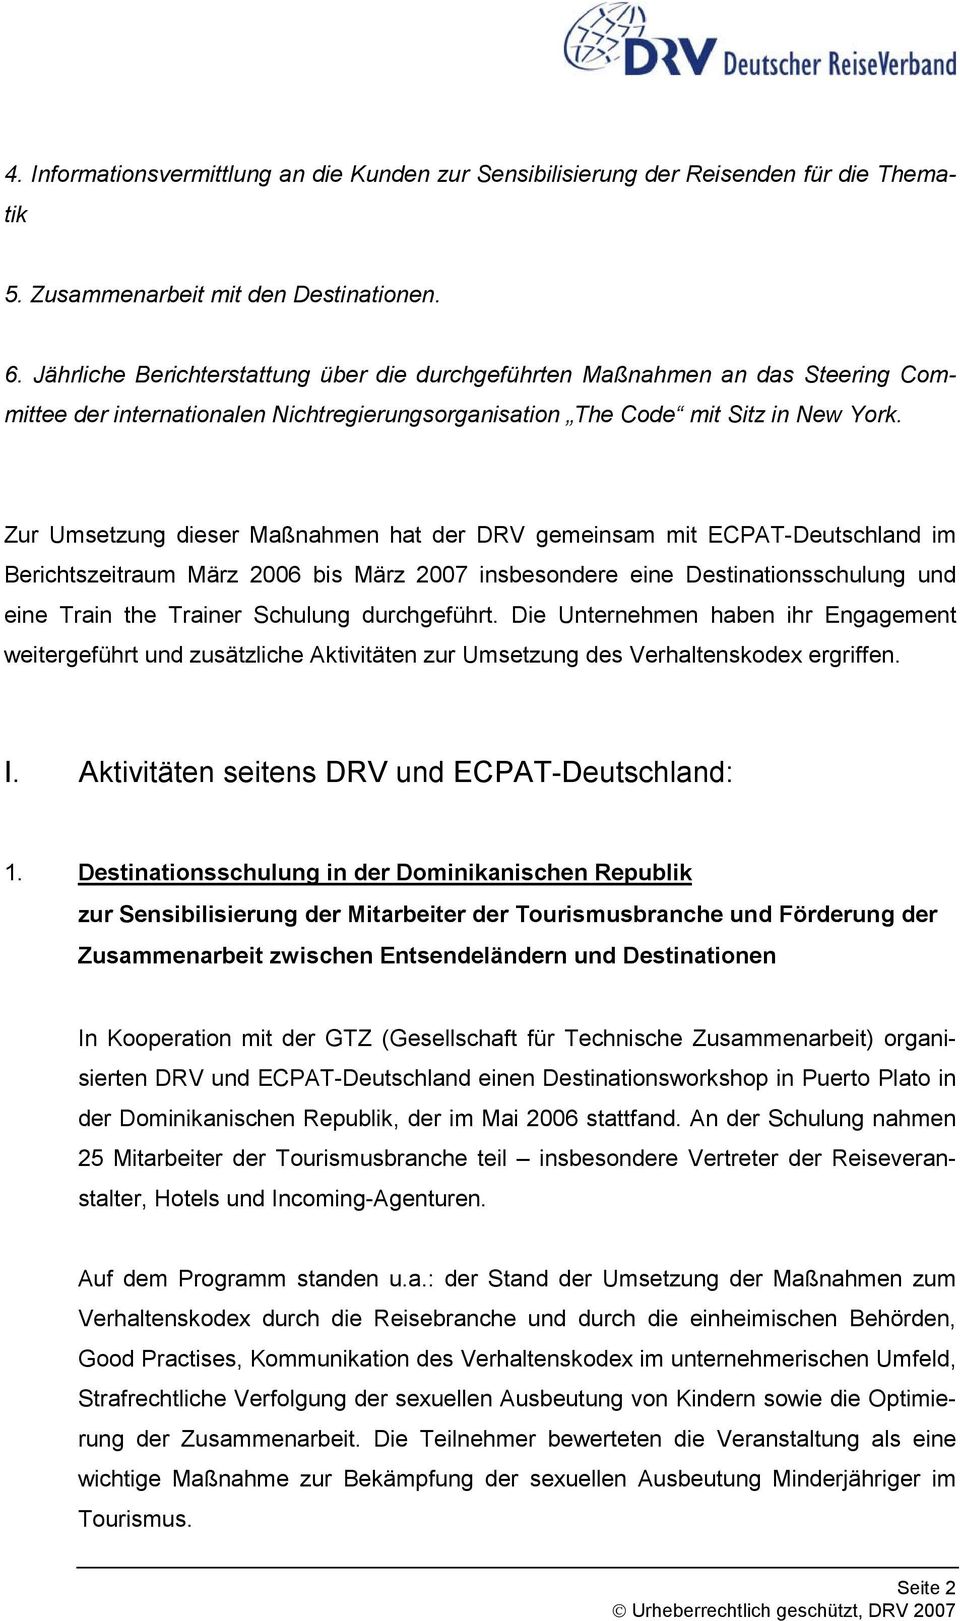 Zur Umsetzung dieser Maßnahmen hat der DRV gemeinsam mit ECPAT-Deutschland im Berichtszeitraum März 2006 bis März 2007 insbesondere eine Destinationsschulung und eine Train the Trainer Schulung